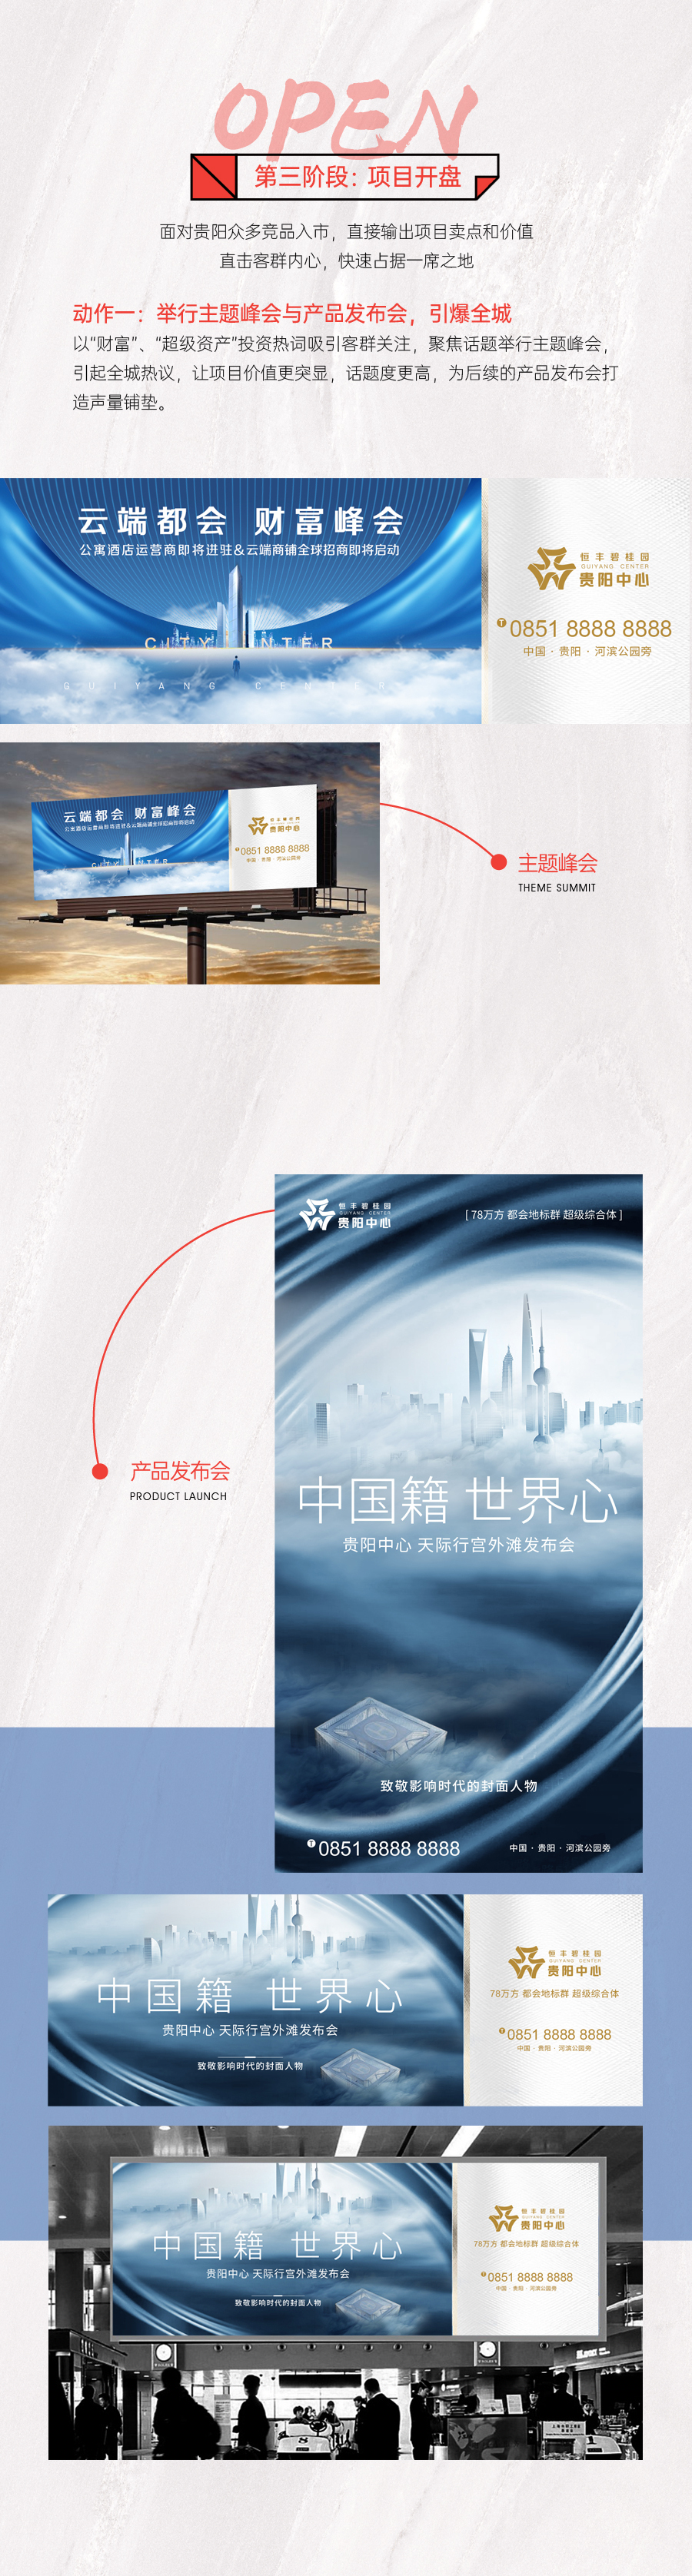 『恒豐碧桂園·貴陽中心』地產綜合體 品牌包裝 品牌VI設計圖5